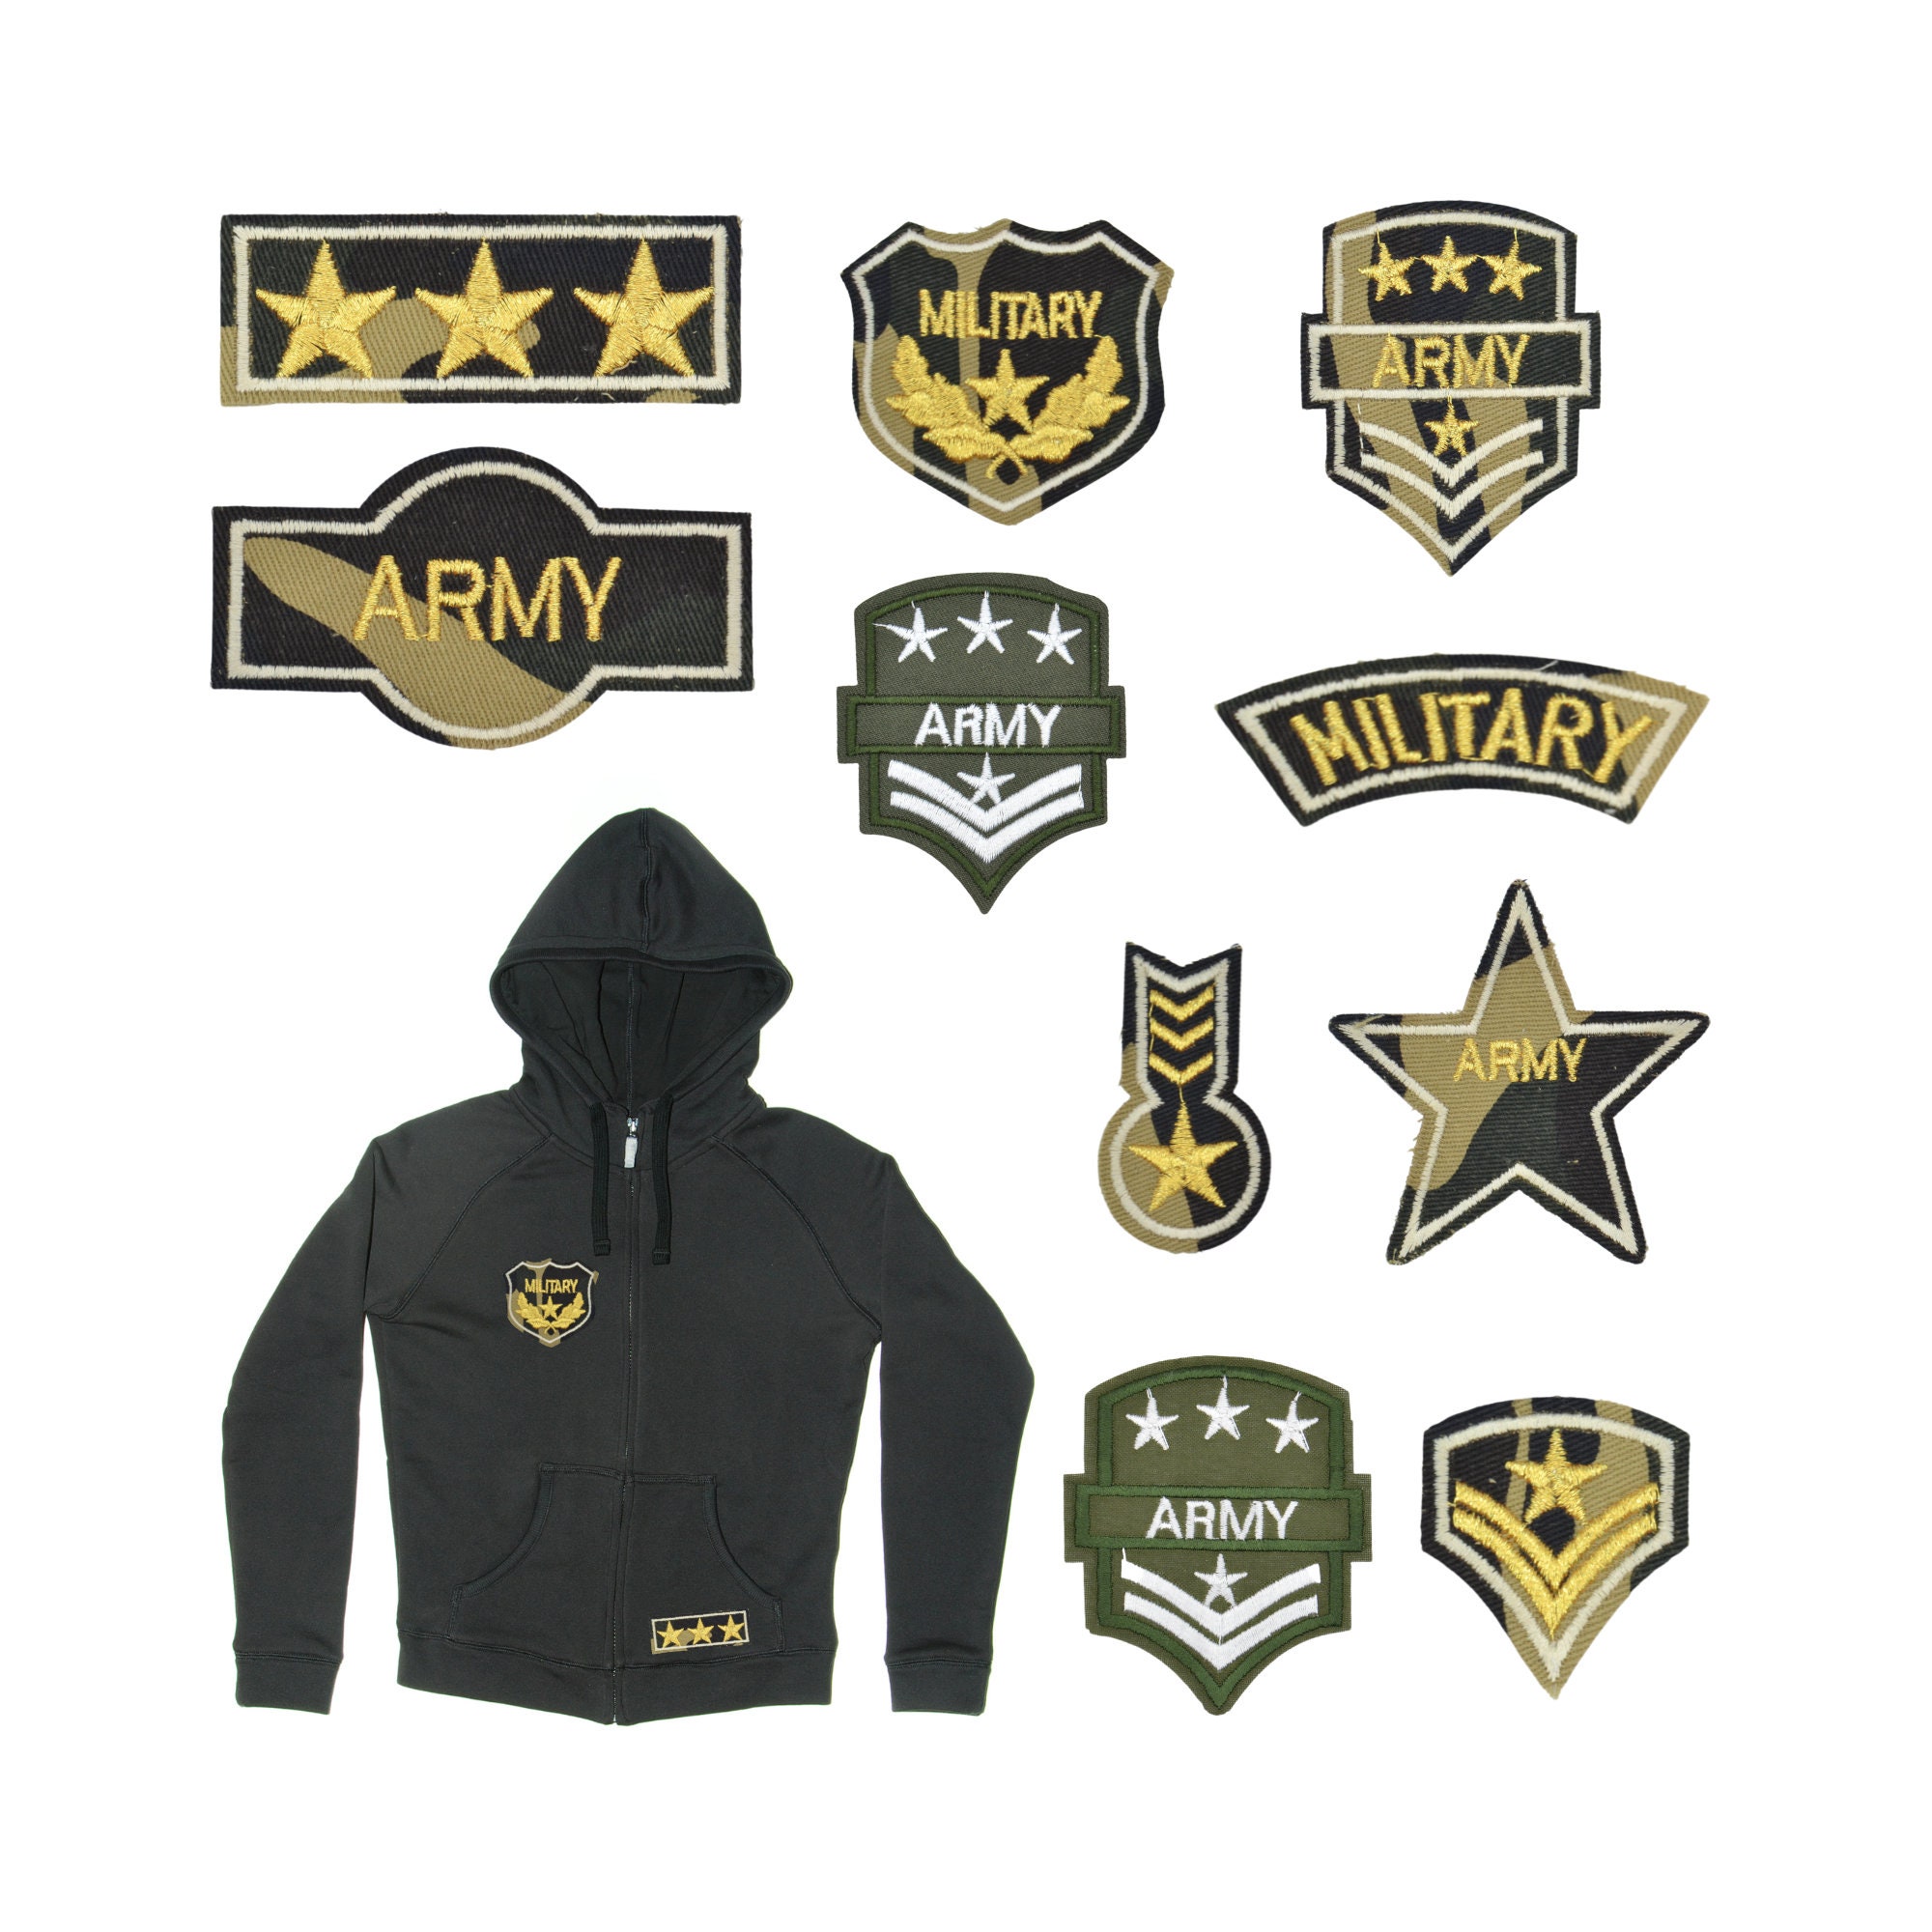 Parches militares y bordados militares personalizados online